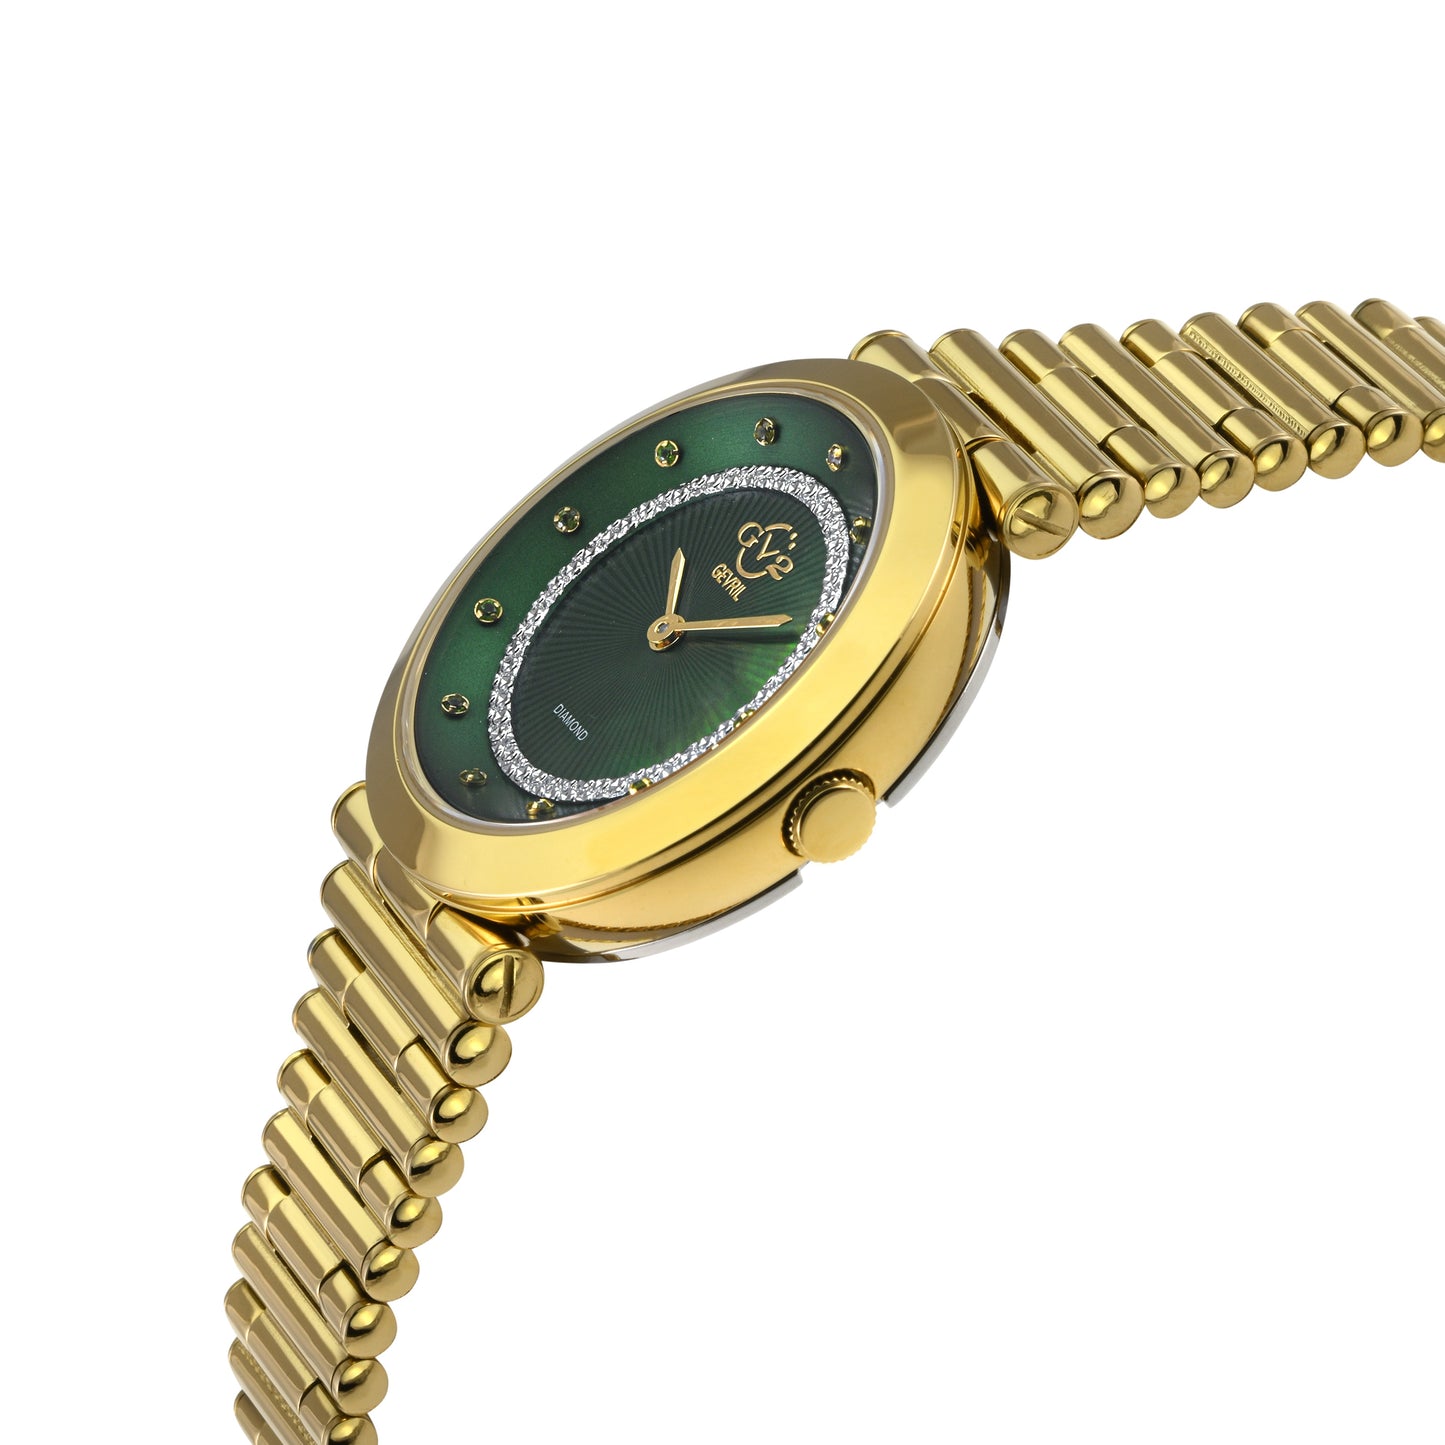 Gevril-Luxury-Swiss-Watches-GV2 Burano Diamond-14413B